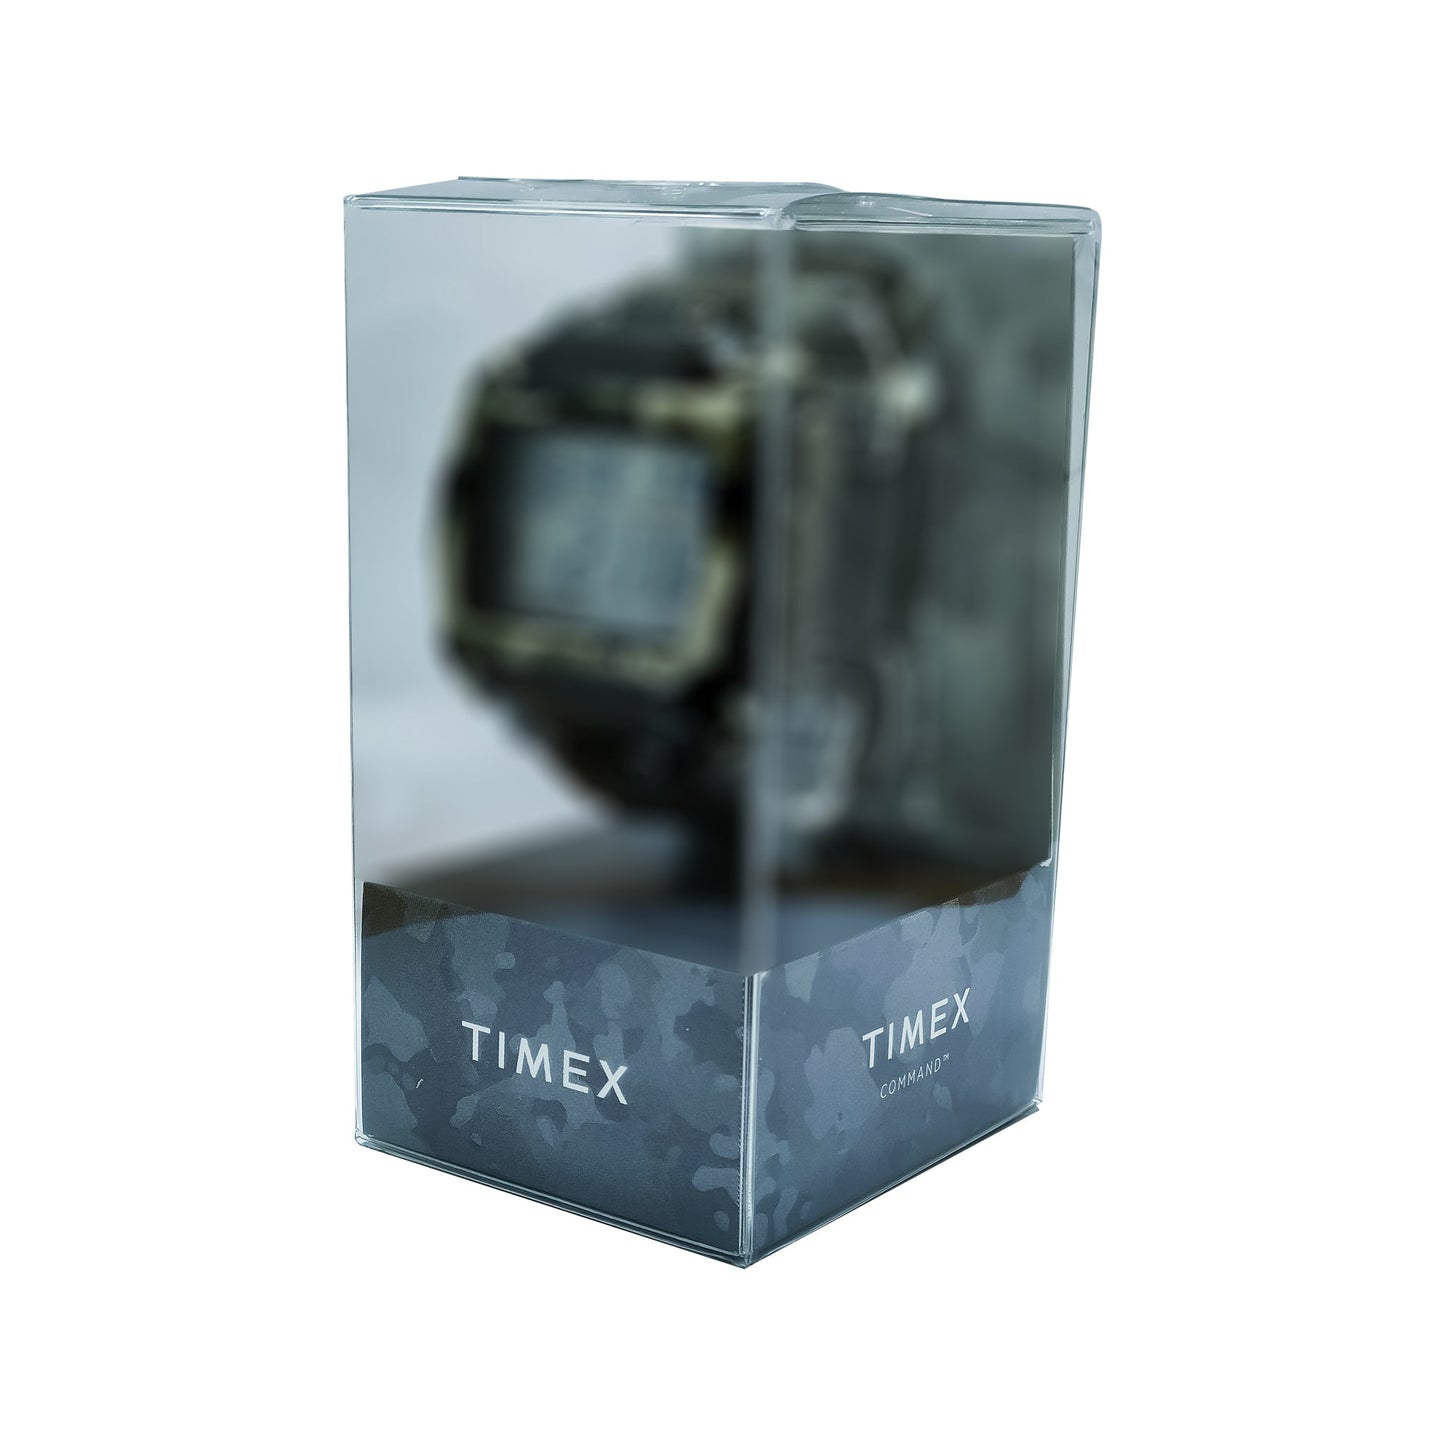 ساعة رجالية تايمكس T49976